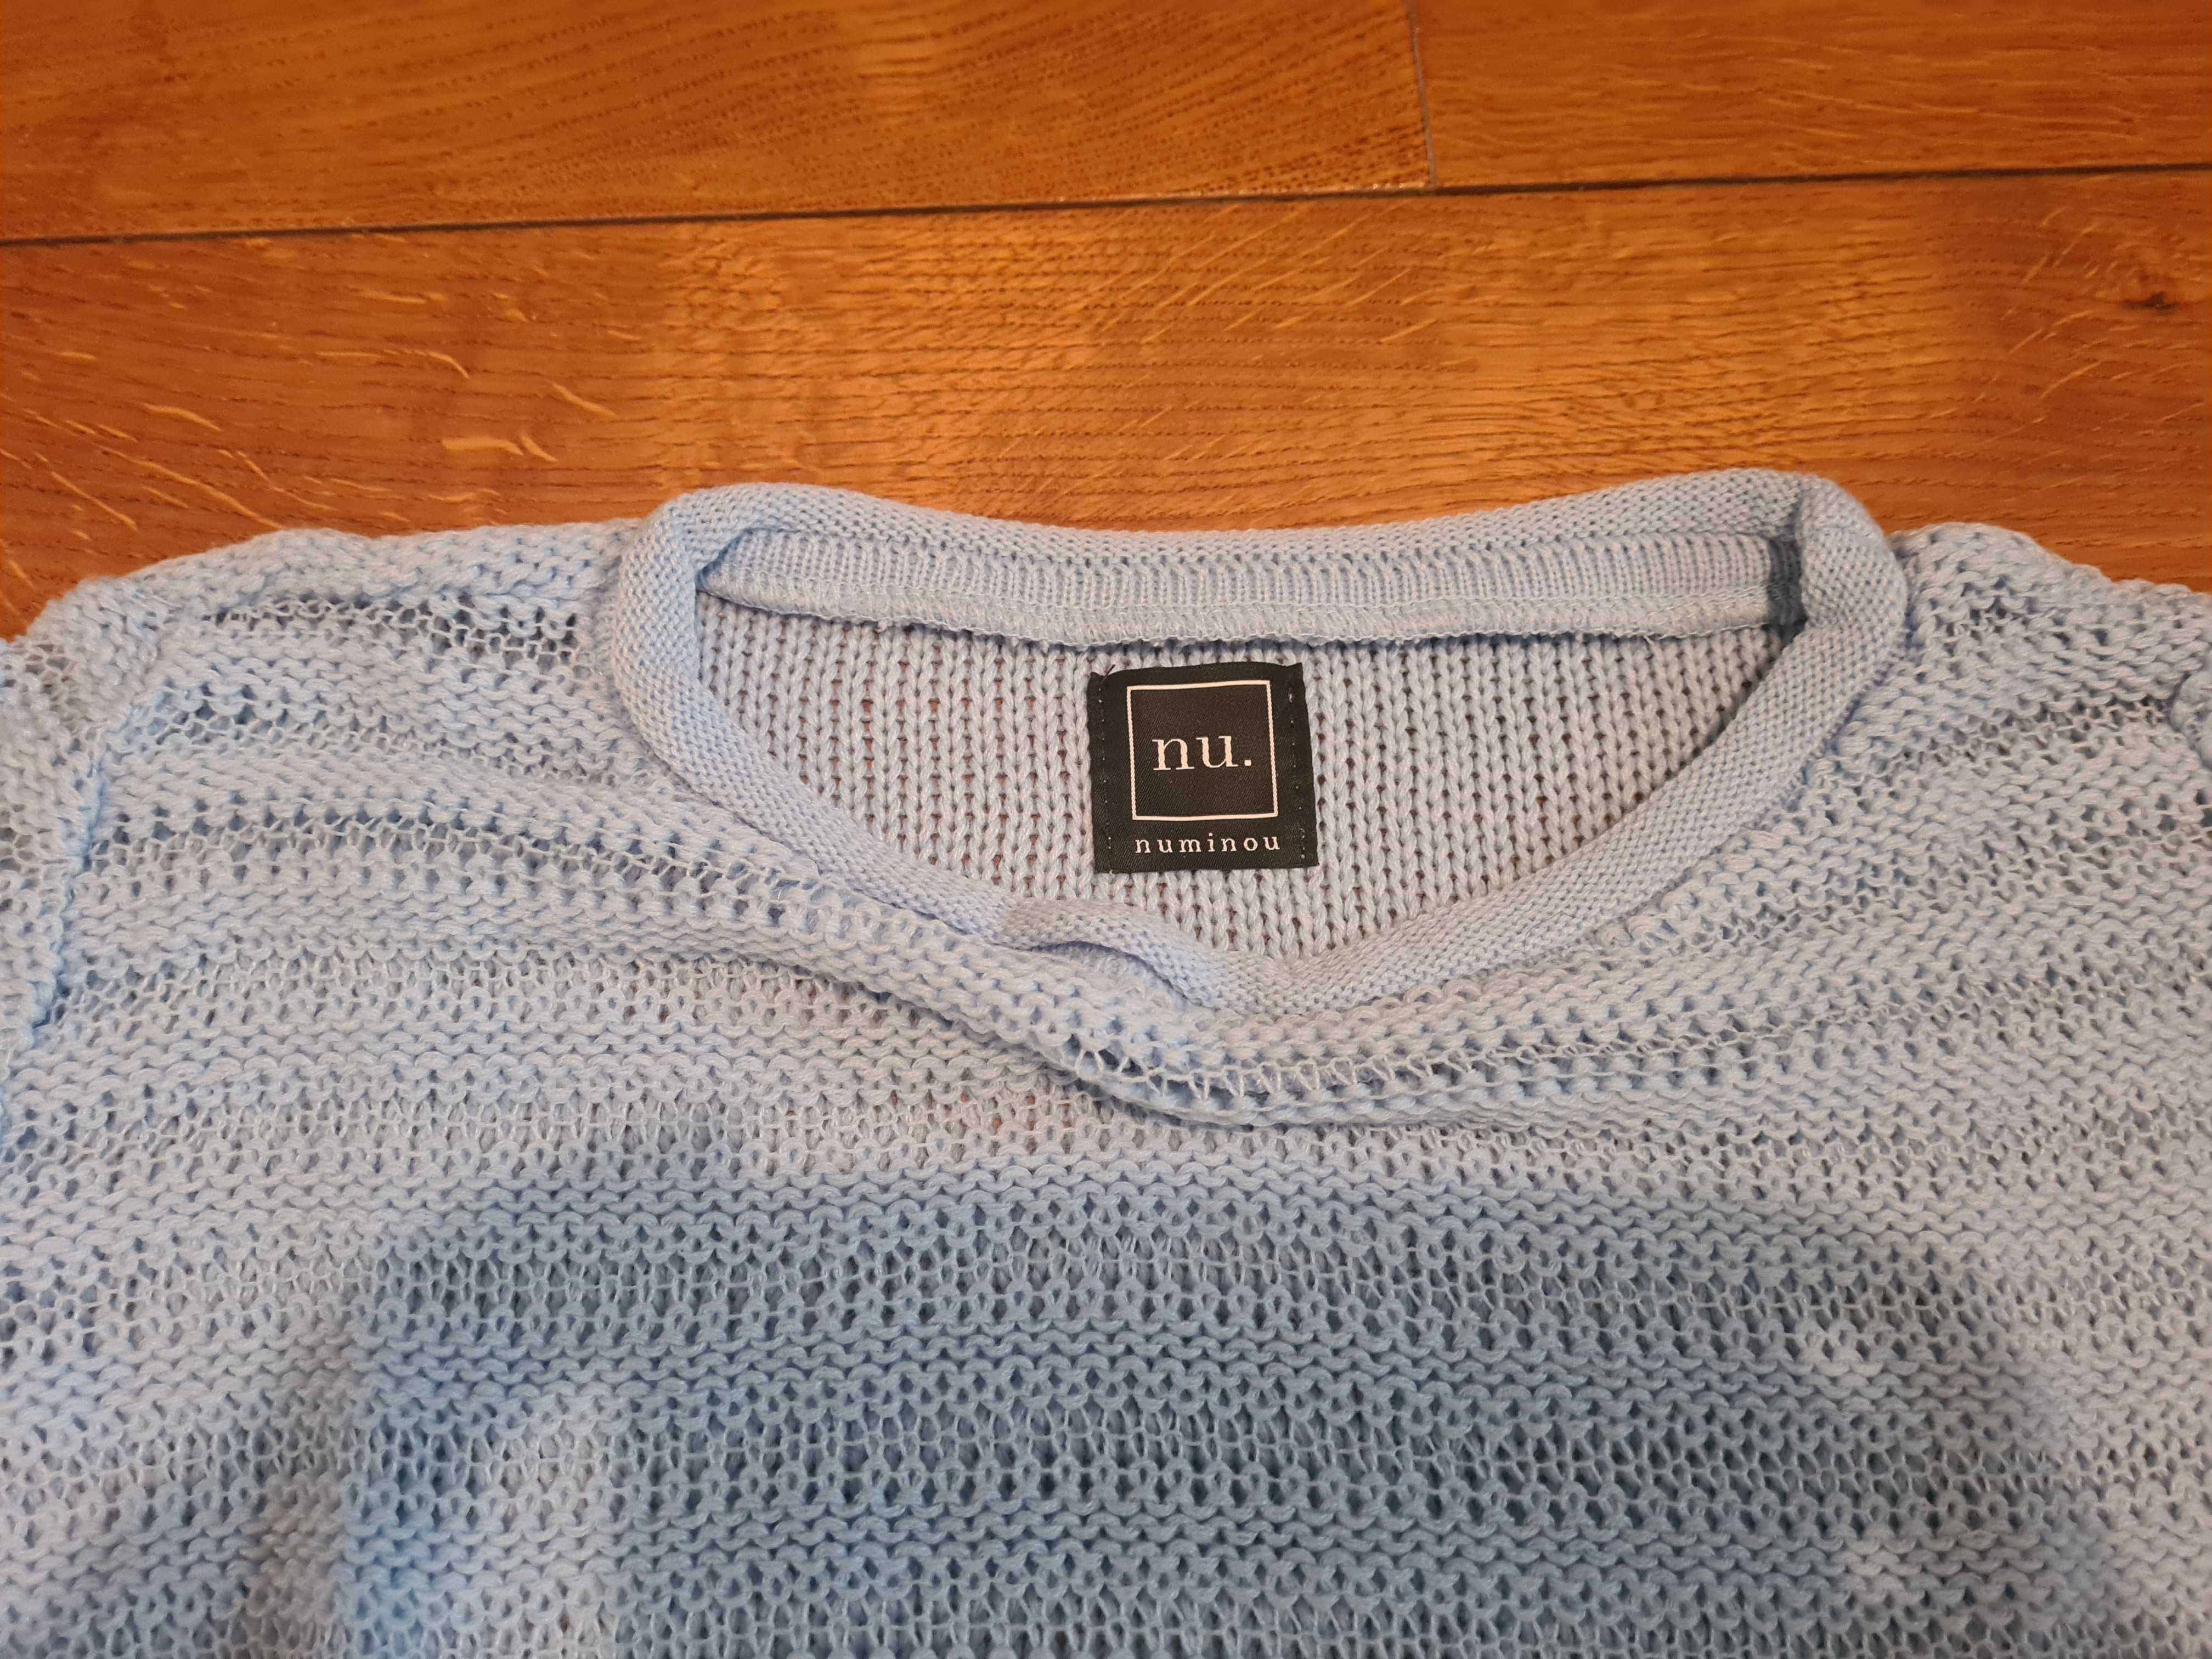 sweterek błękitny NU. rozmiar 36